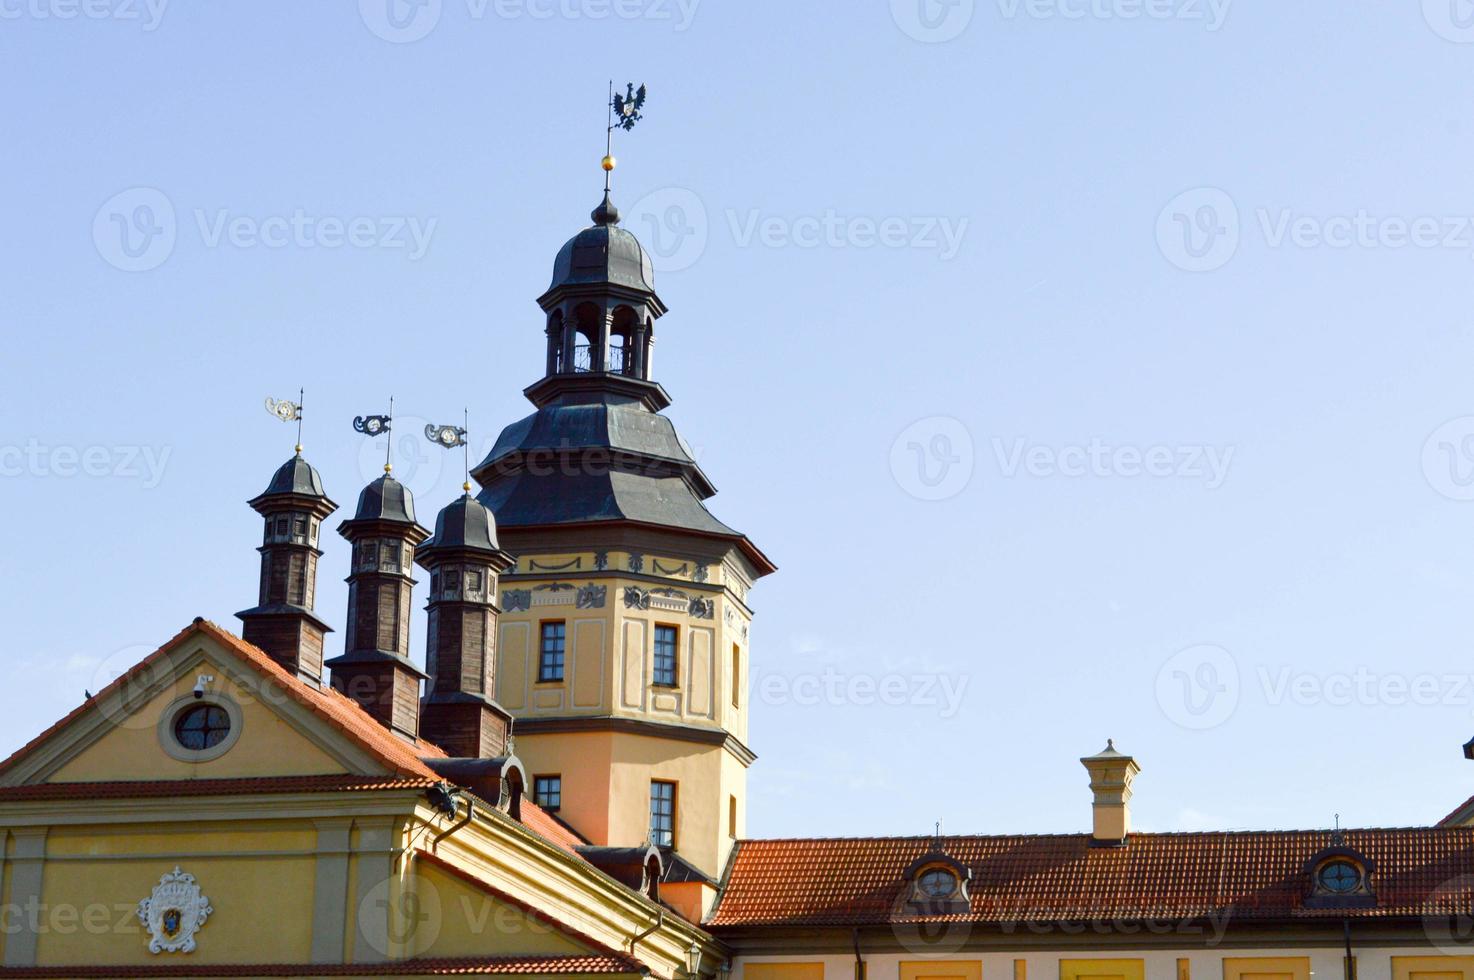 hoog torens en torens, de dak van een oud, oude middeleeuws barok kasteel, een Renaissance, gotisch in de centrum van Europa tegen een blauw lucht foto